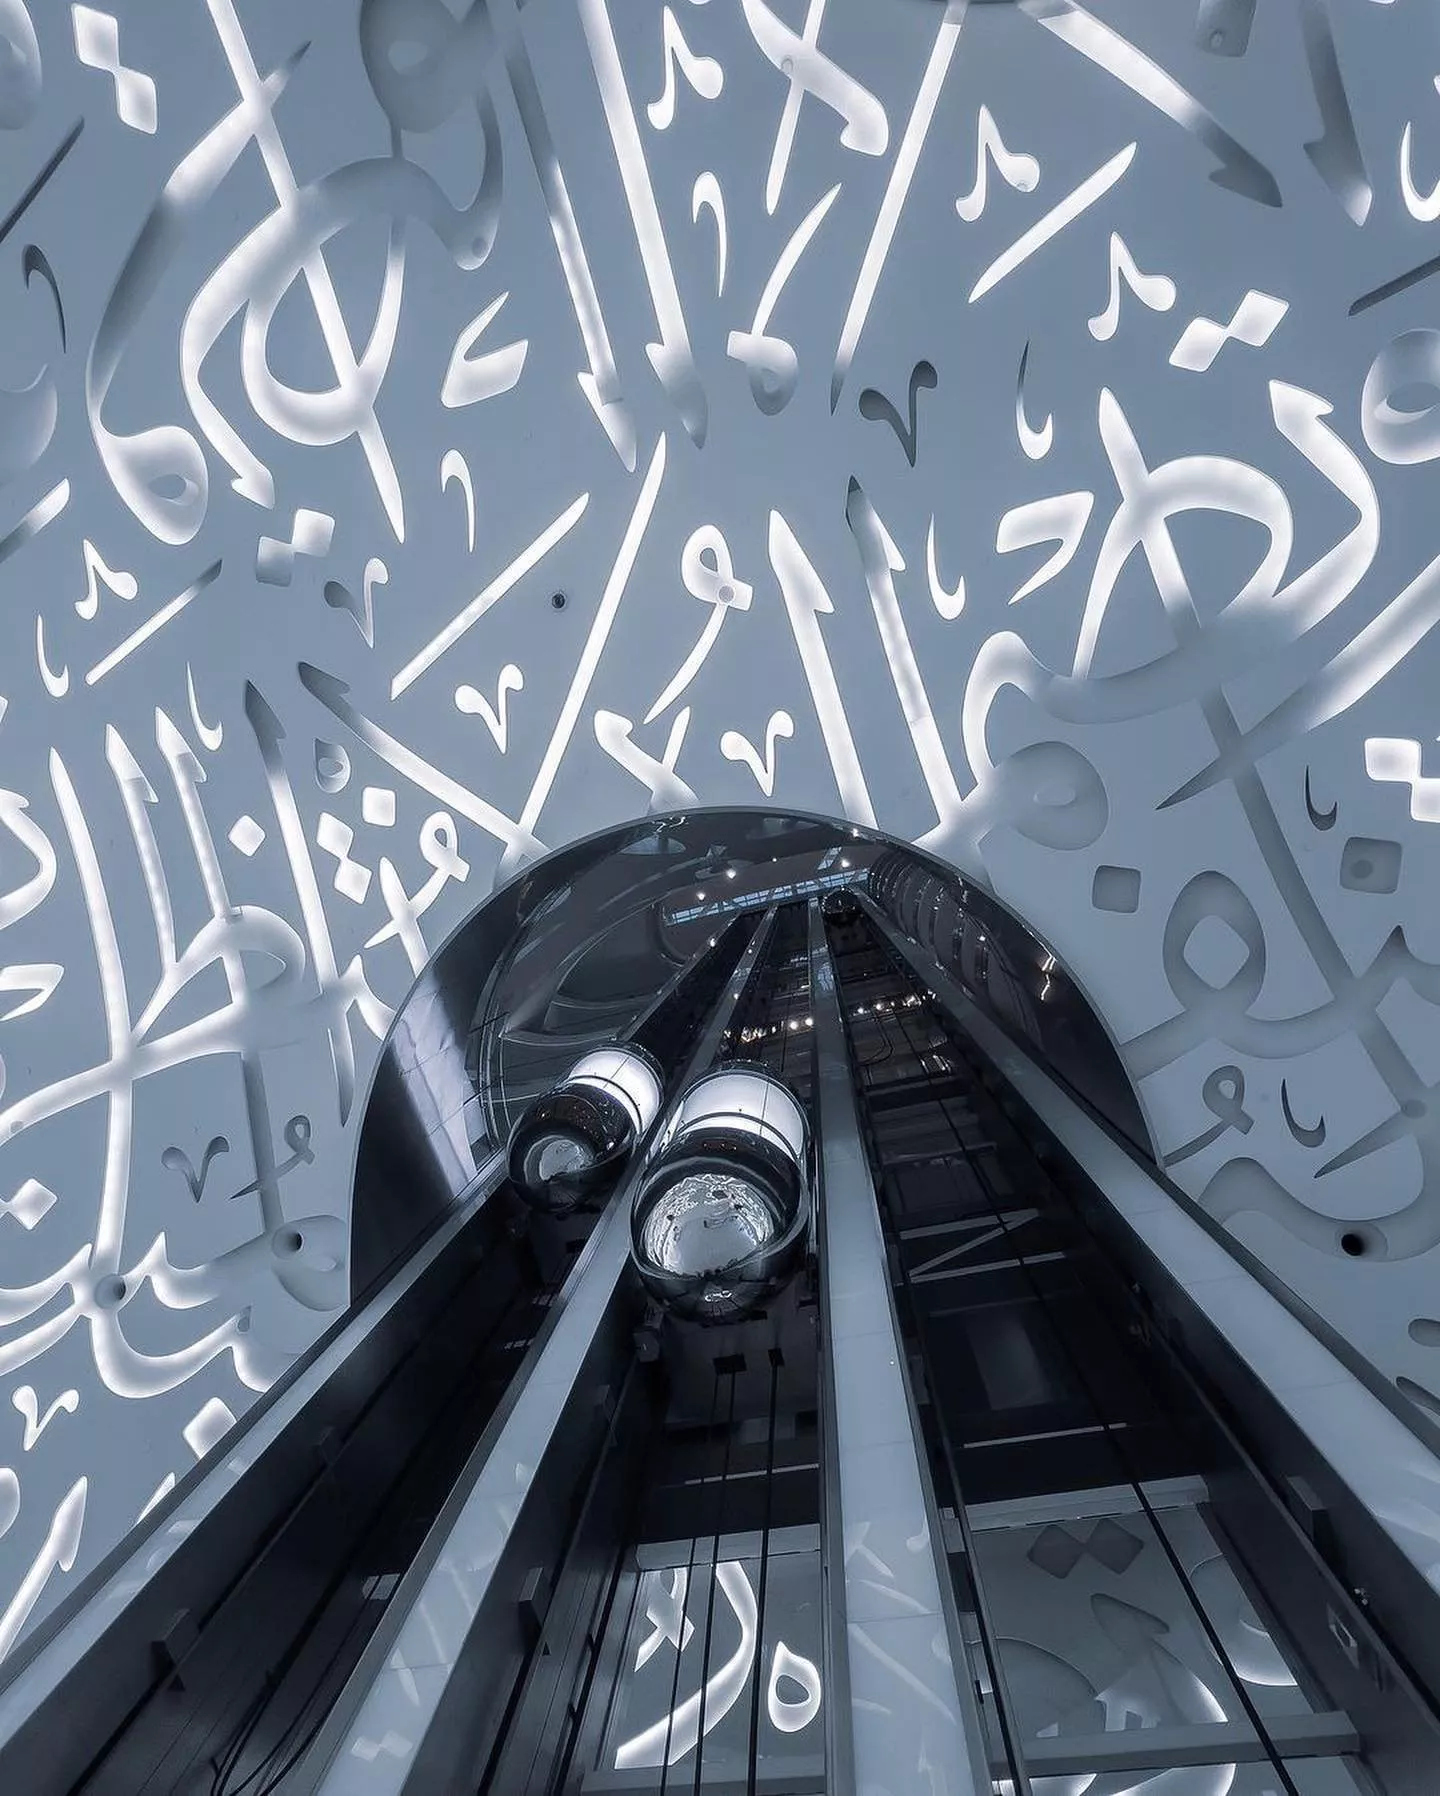 افتتاح متحف المستقبل في دبي: عرض خيالي تعجز الكلمات عن وصفه!